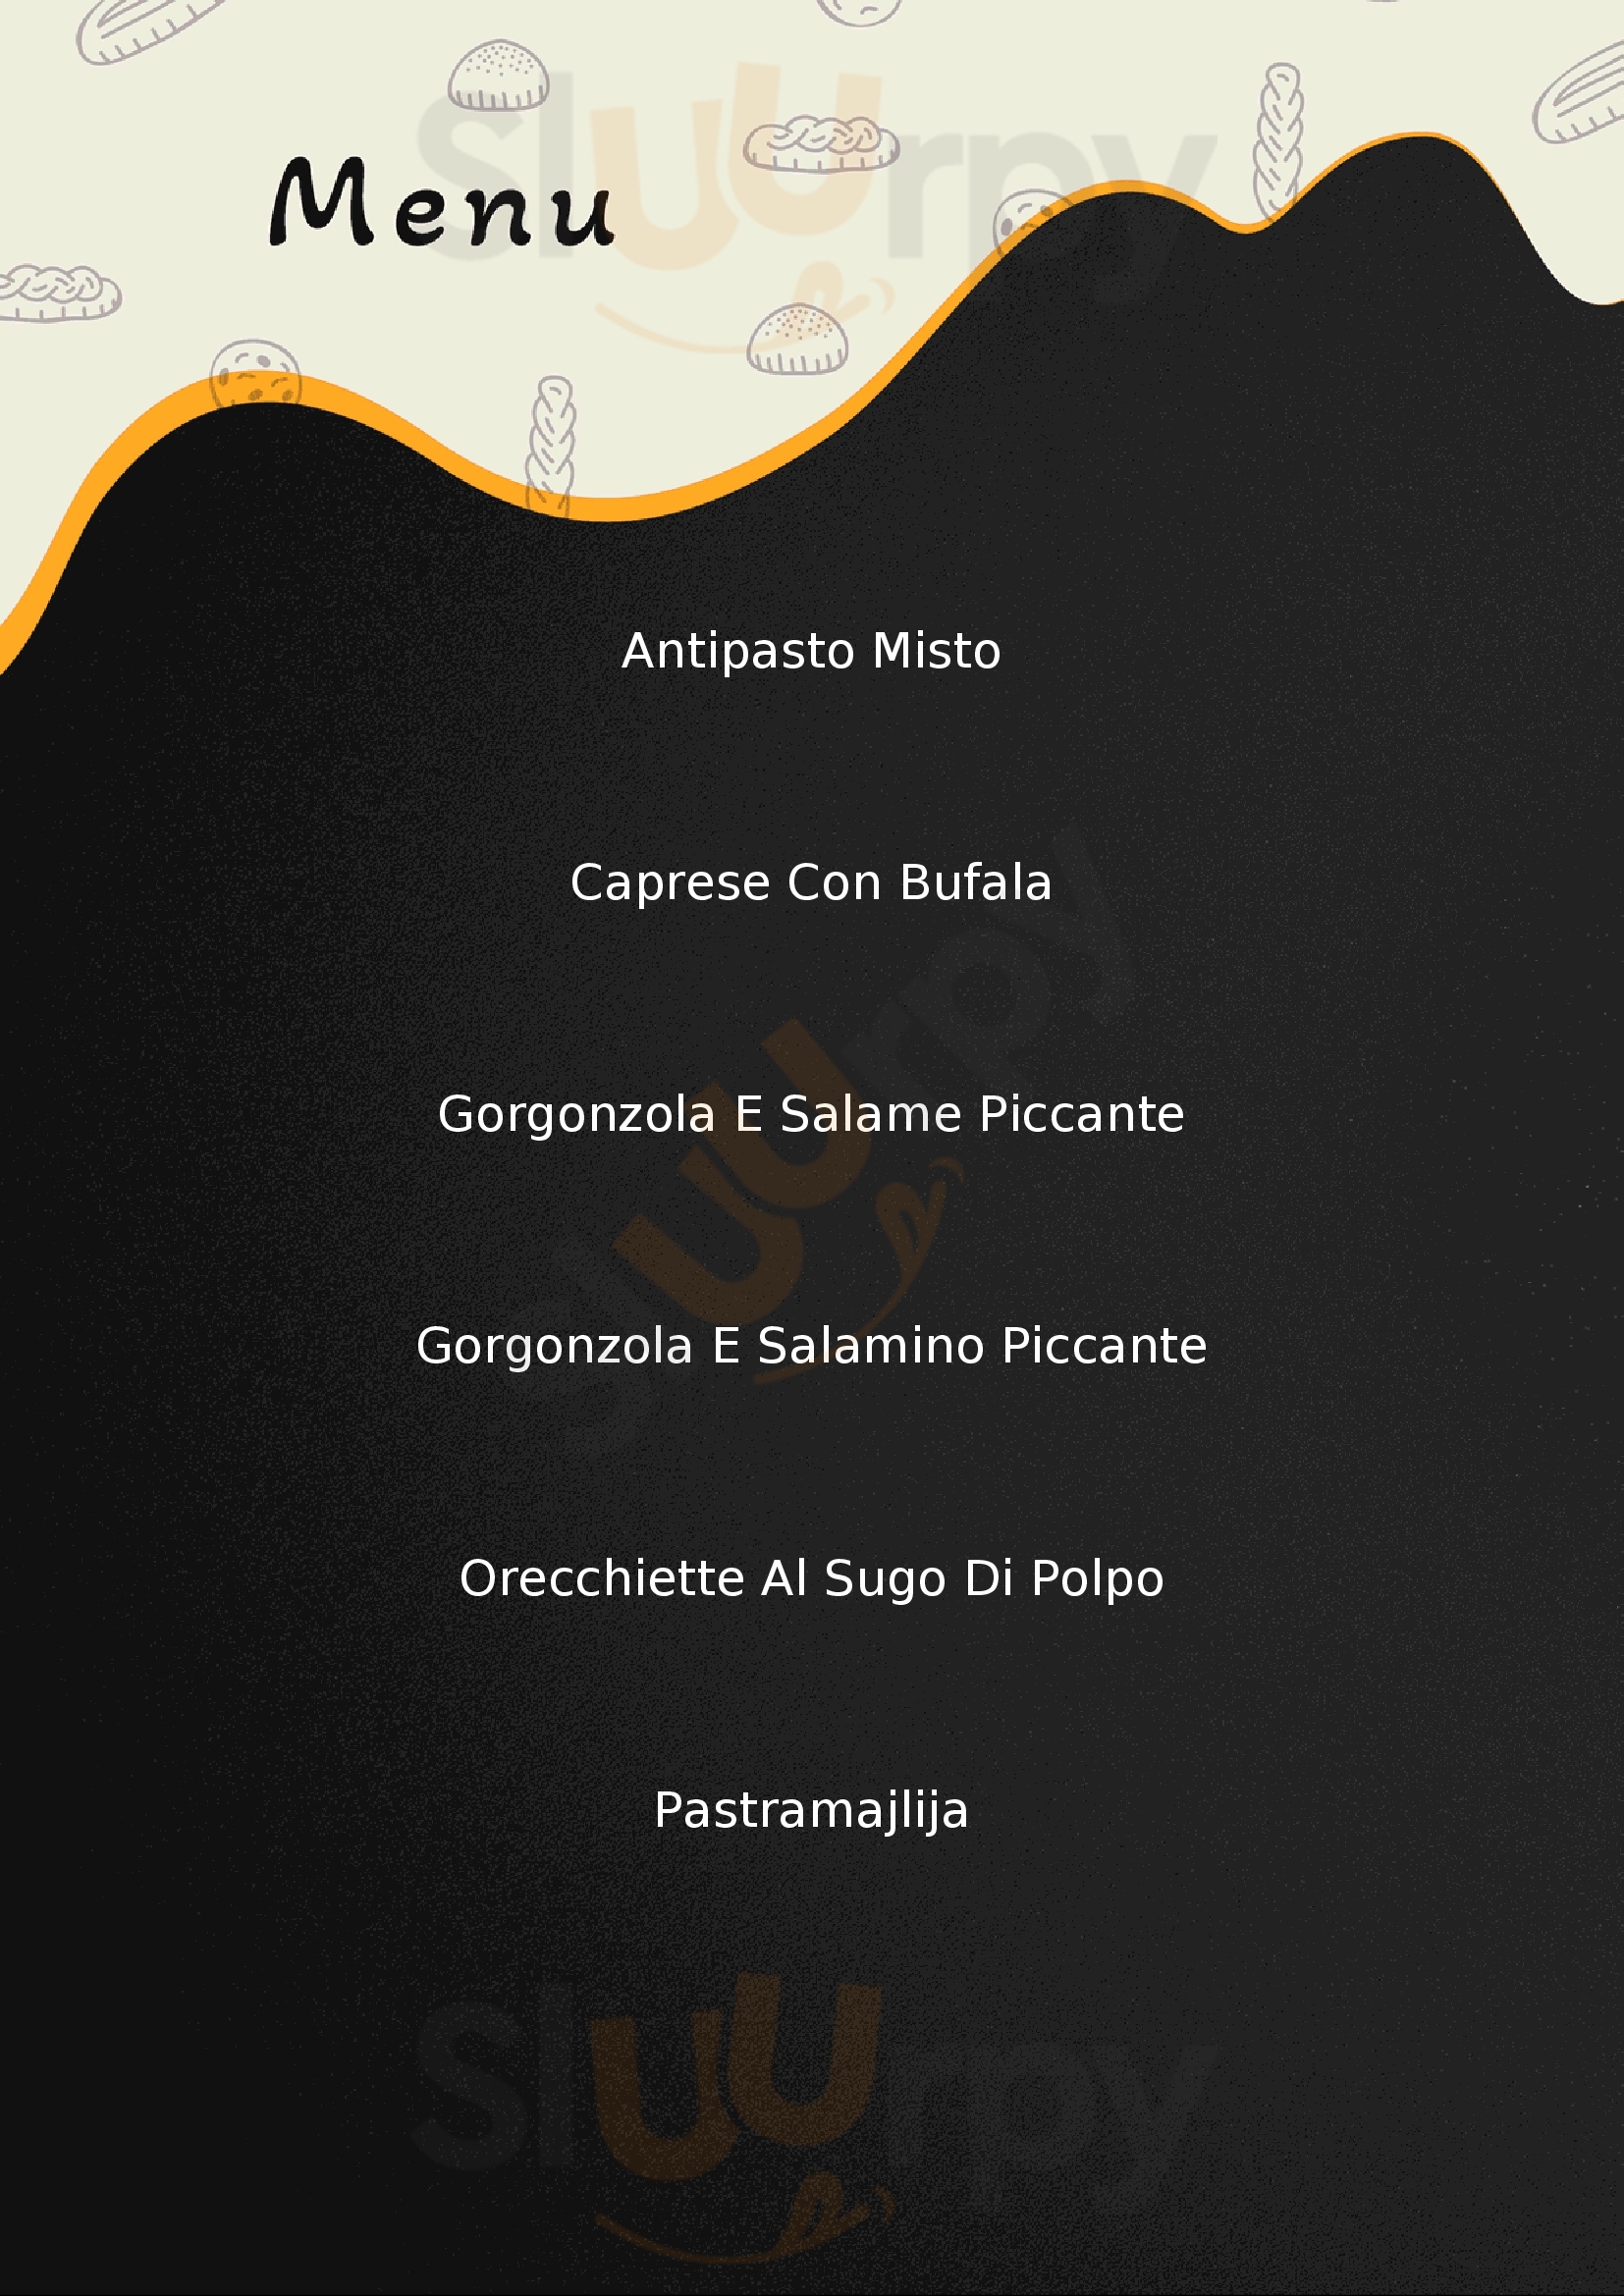 La Villetta Pizzeria - Ristorante Cessole menù 1 pagina